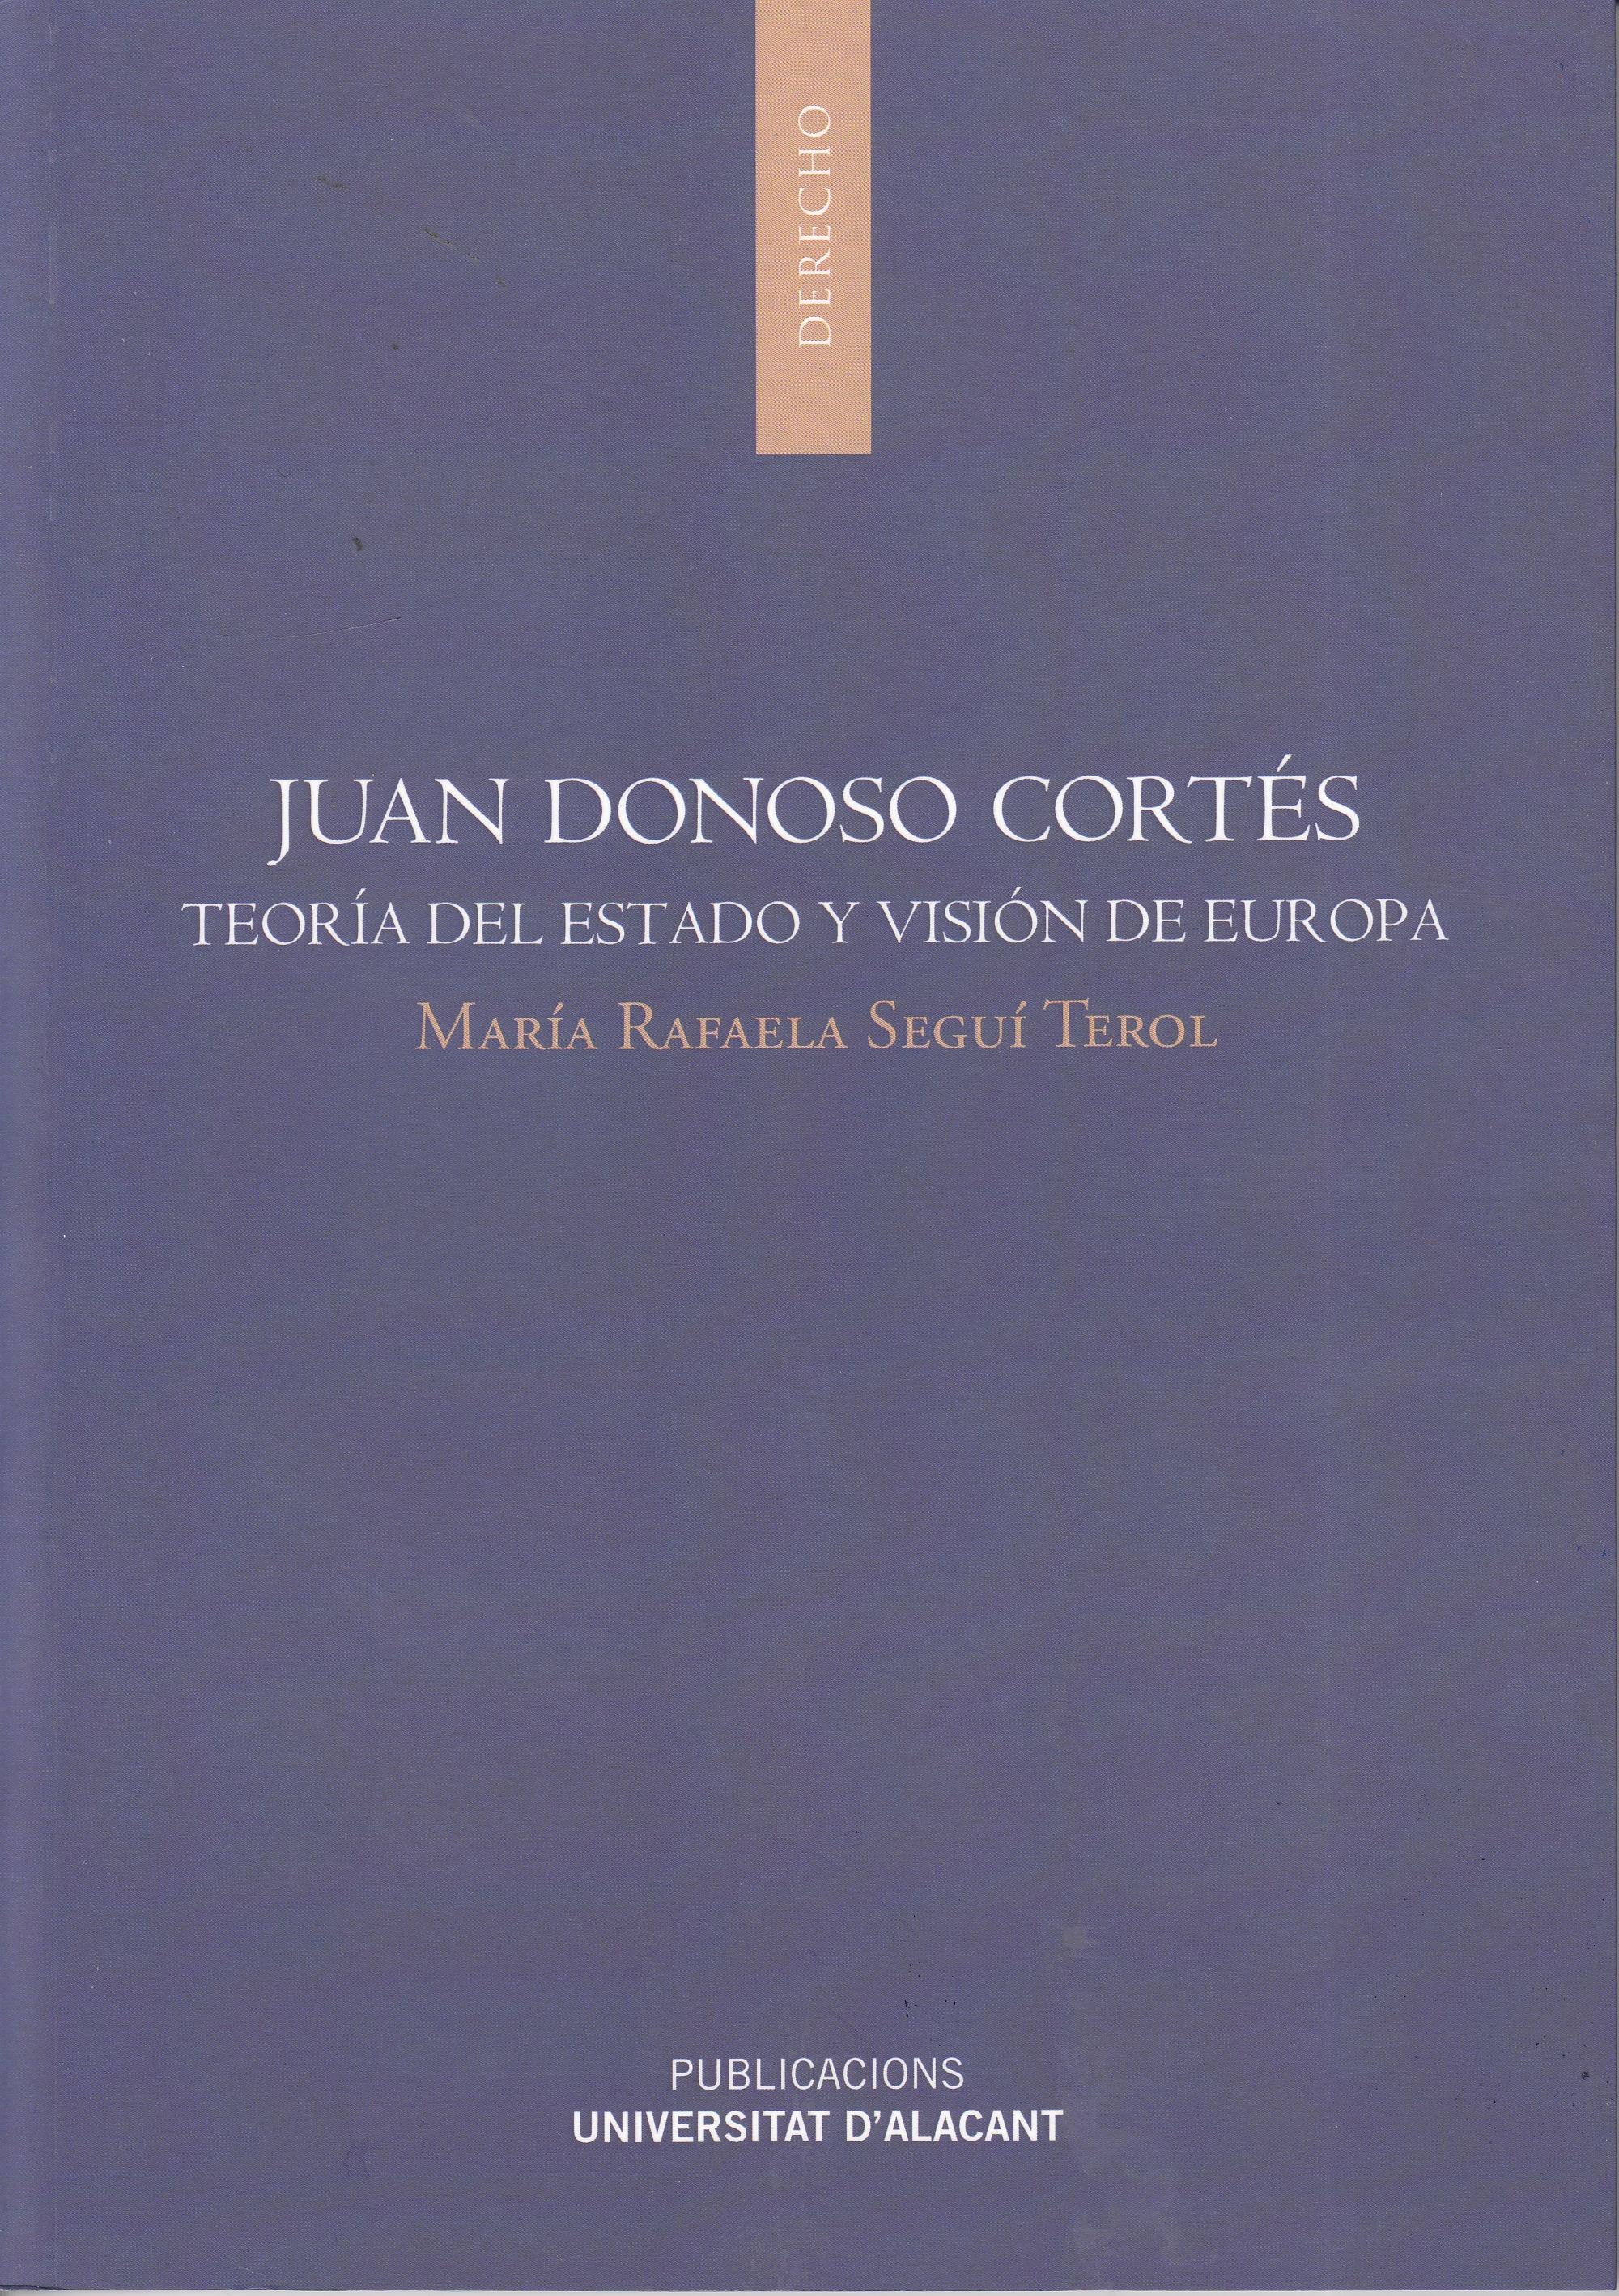 Juan Donoso Cortés "Teoría del Estado y visión de Europa"